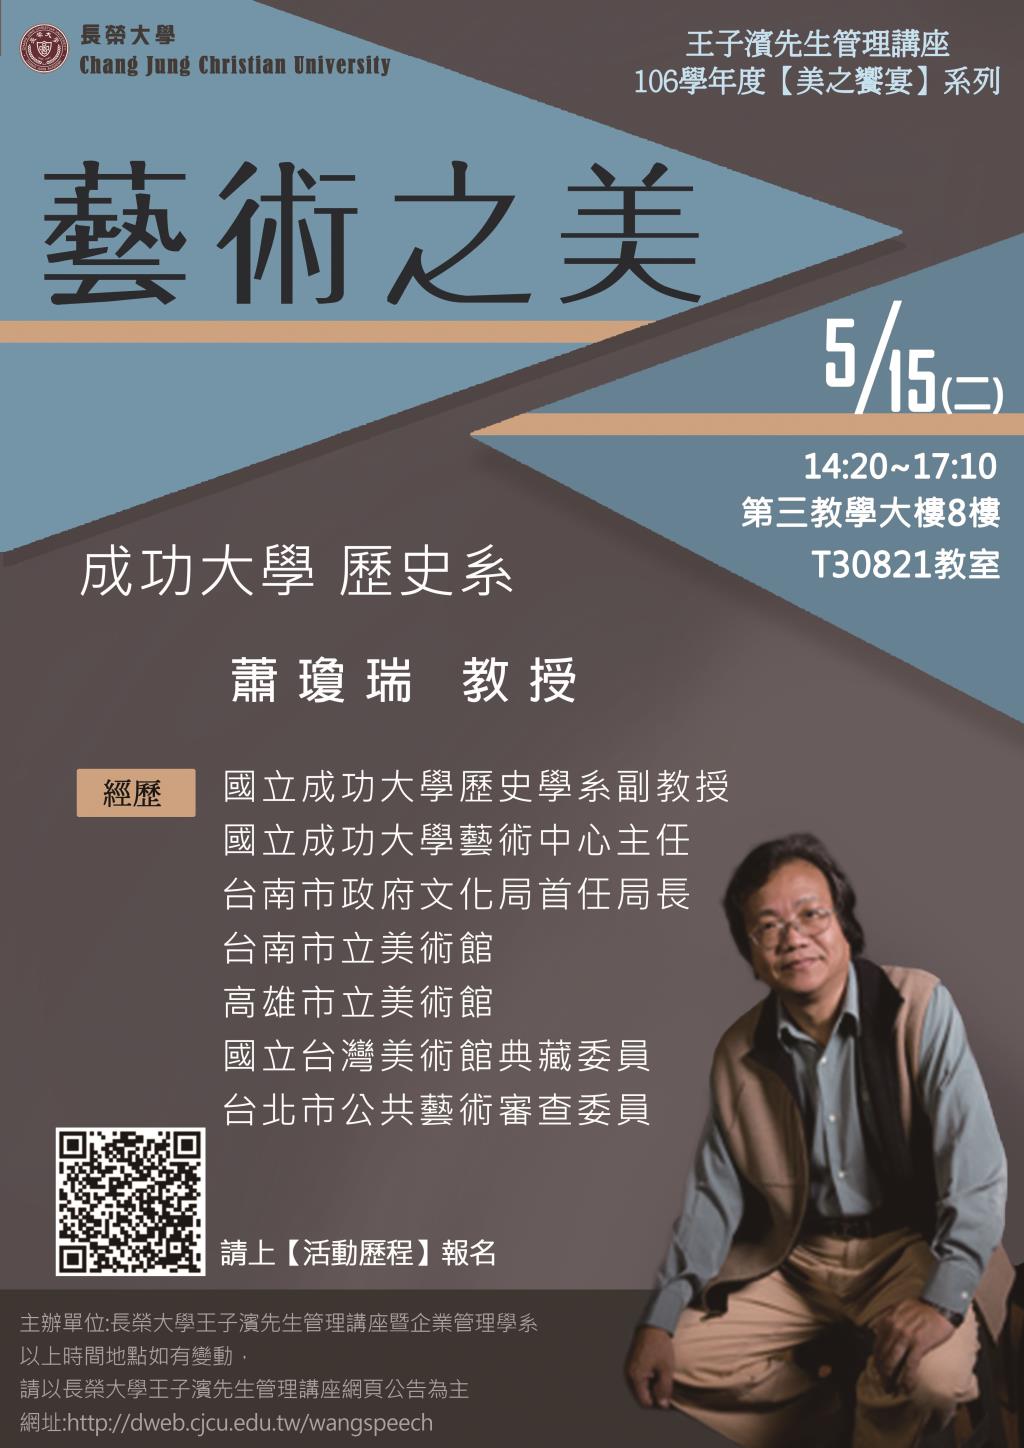 敬邀參加週二下午(5/15)王子濱先生管理講座---國立成功大學 歷史系 蕭瓊瑞教授